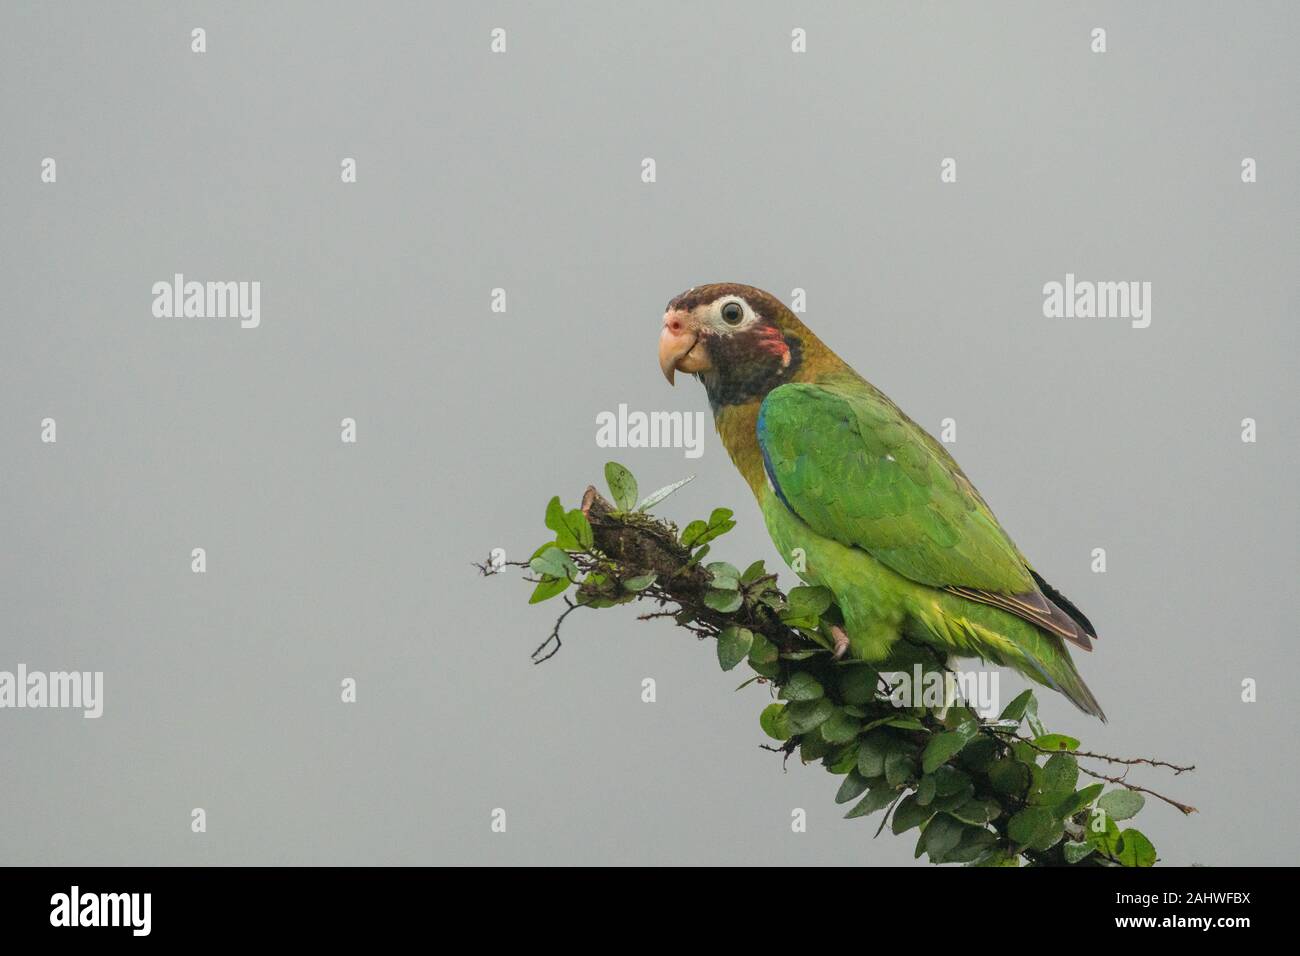 A brown-hooded parrot (Pyrilia haematotis) perches on a tree branch in Laguna del Lagarto, Costa Rica Stock Photo